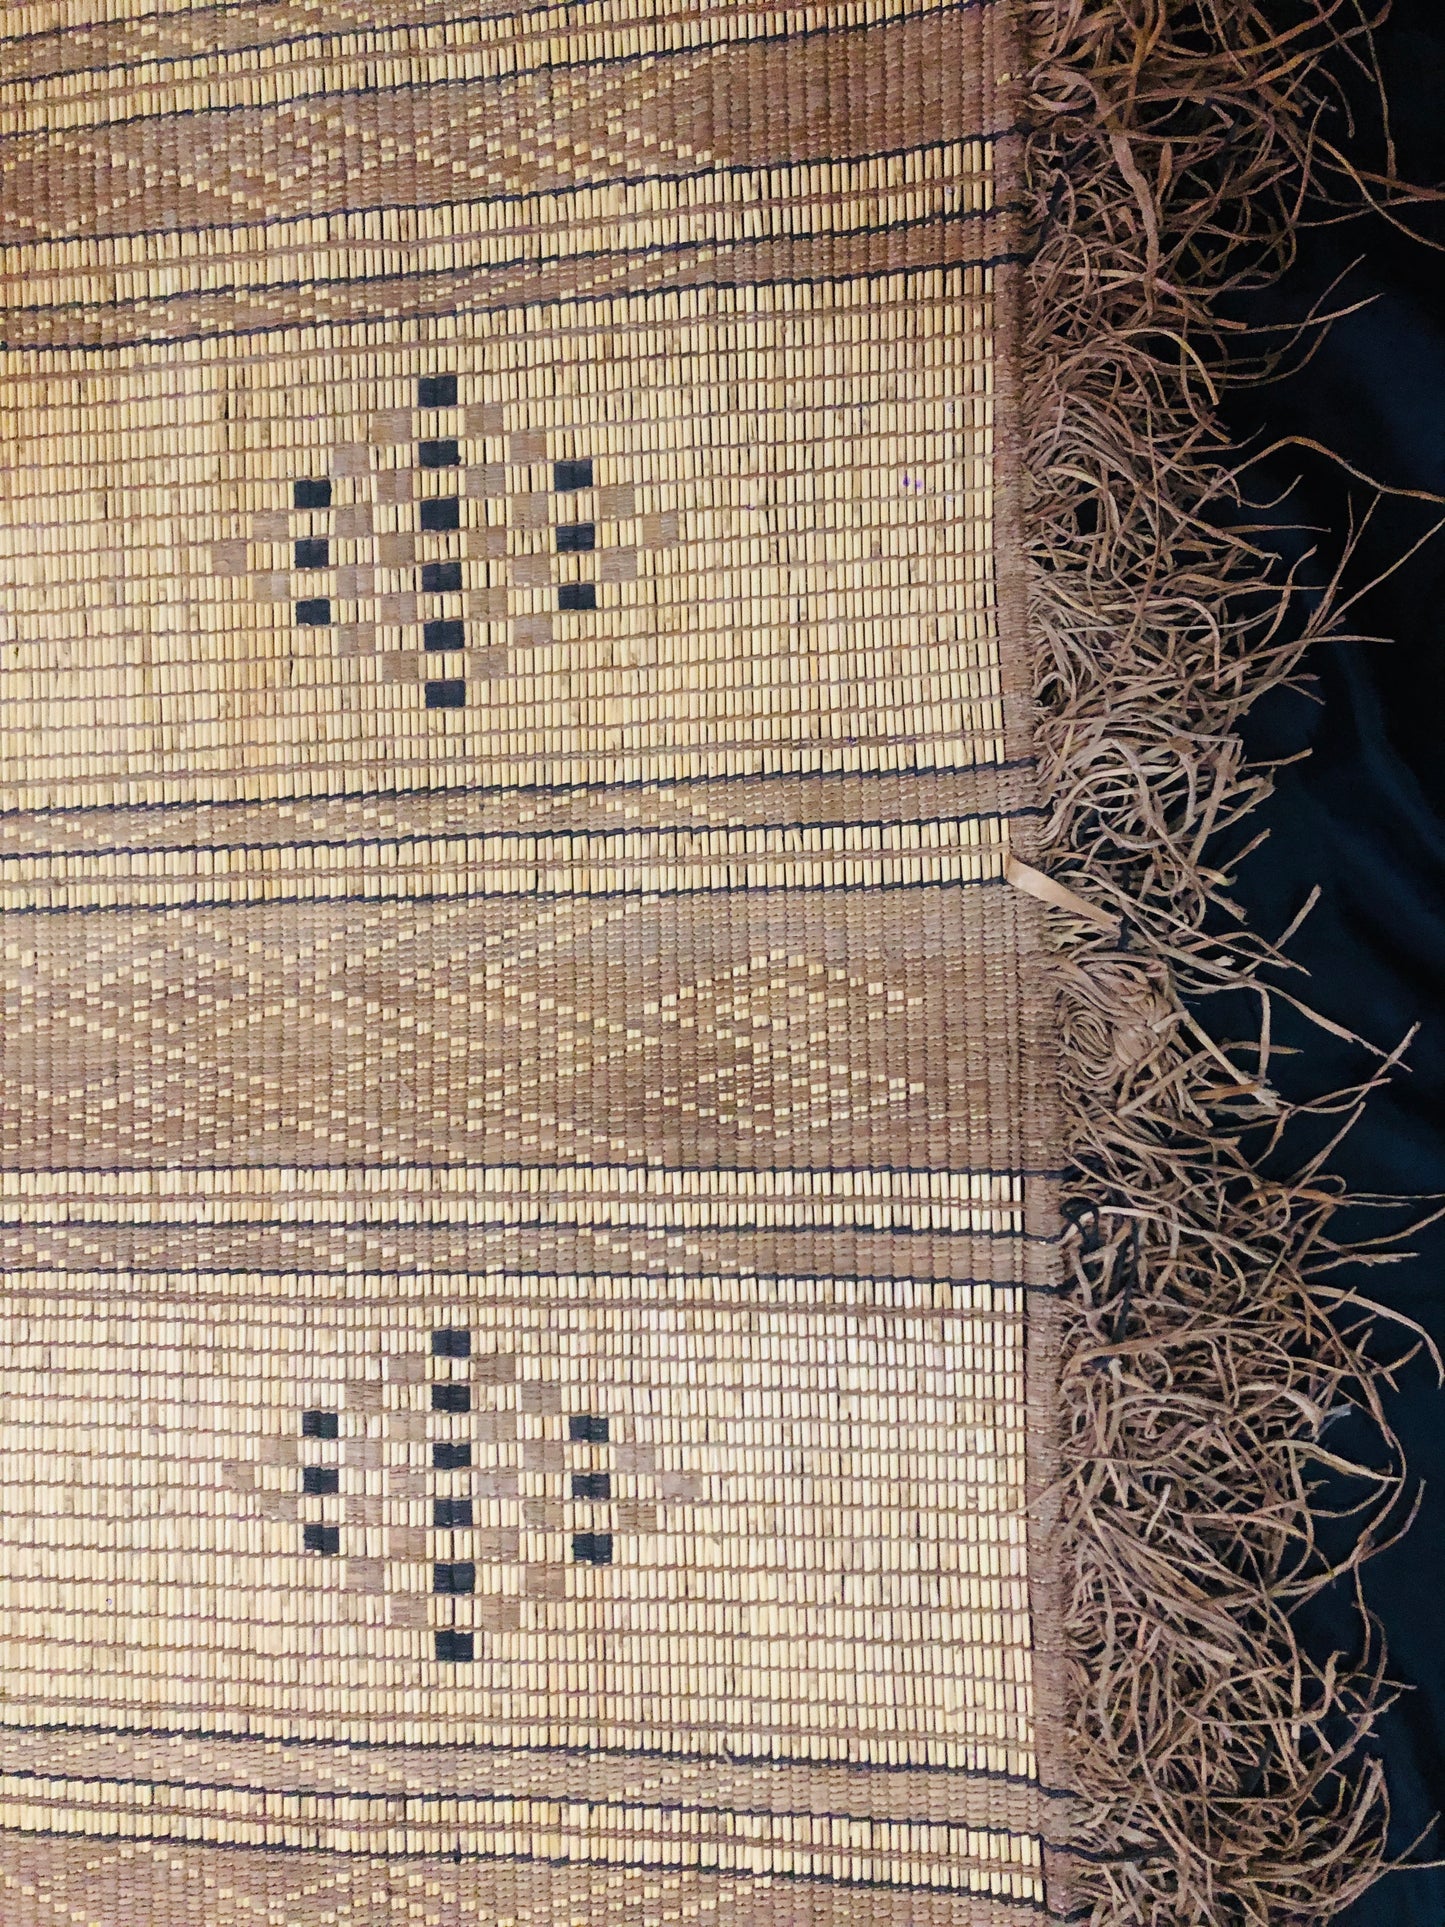 Vintage Handmade Tuareg Mat Area Rug - 5.31 FT × 3.77 FT ( 162 Cm × 115 Cm ) Authentic Ethnic Tribal Nomadic Sahara Desert Rug - MarrakeshLoom